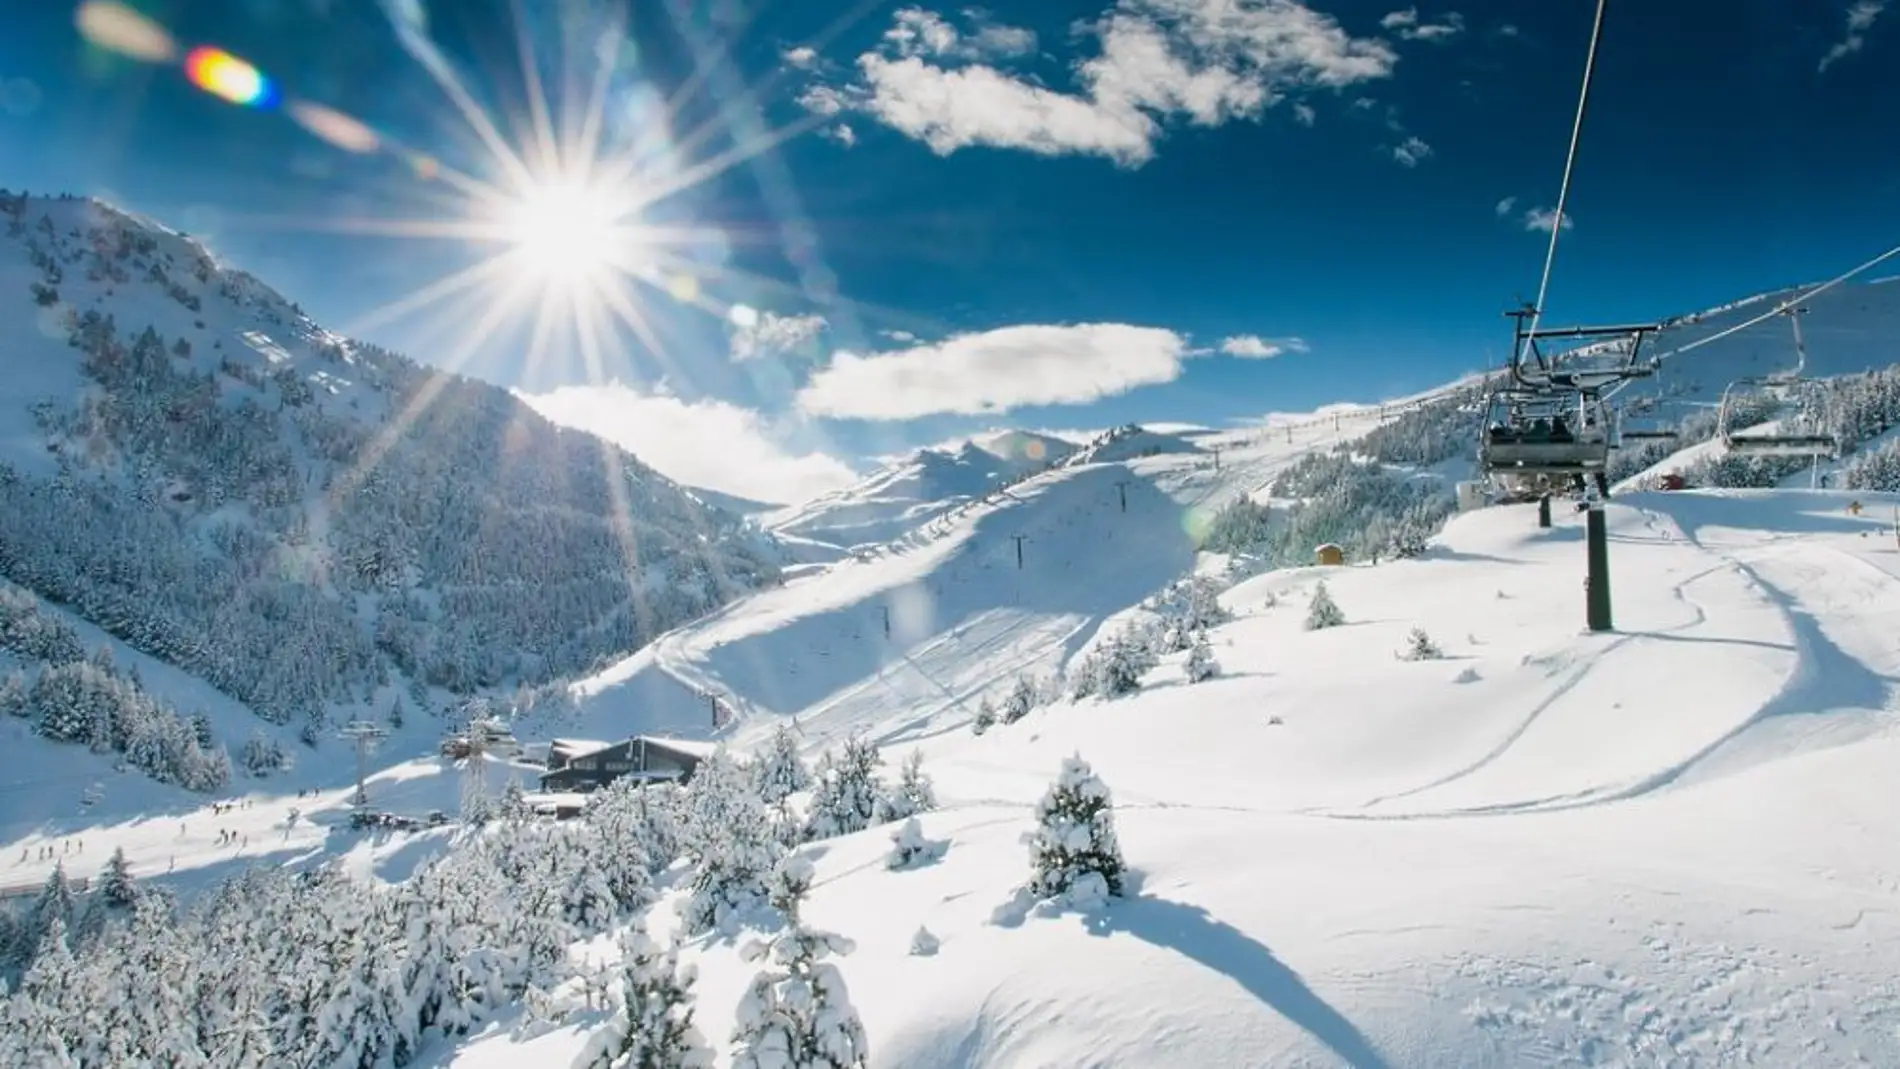 Asociaciones Turísticas del Pirineo critican la exclusión del turismo invernal